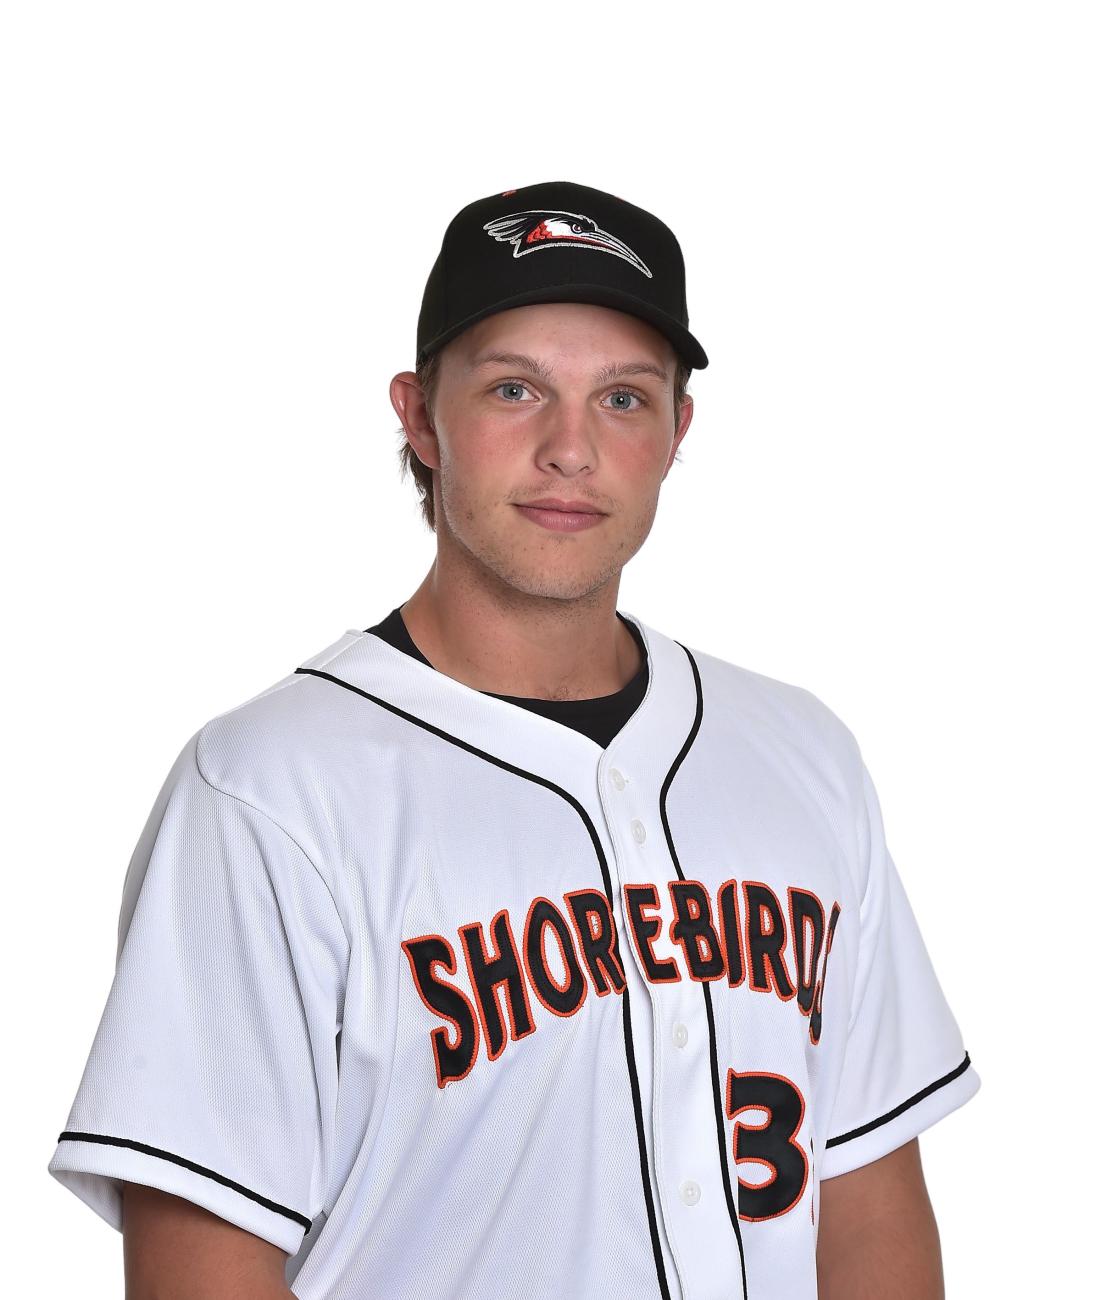 Orioles minor league pitcher Ryan Long '21